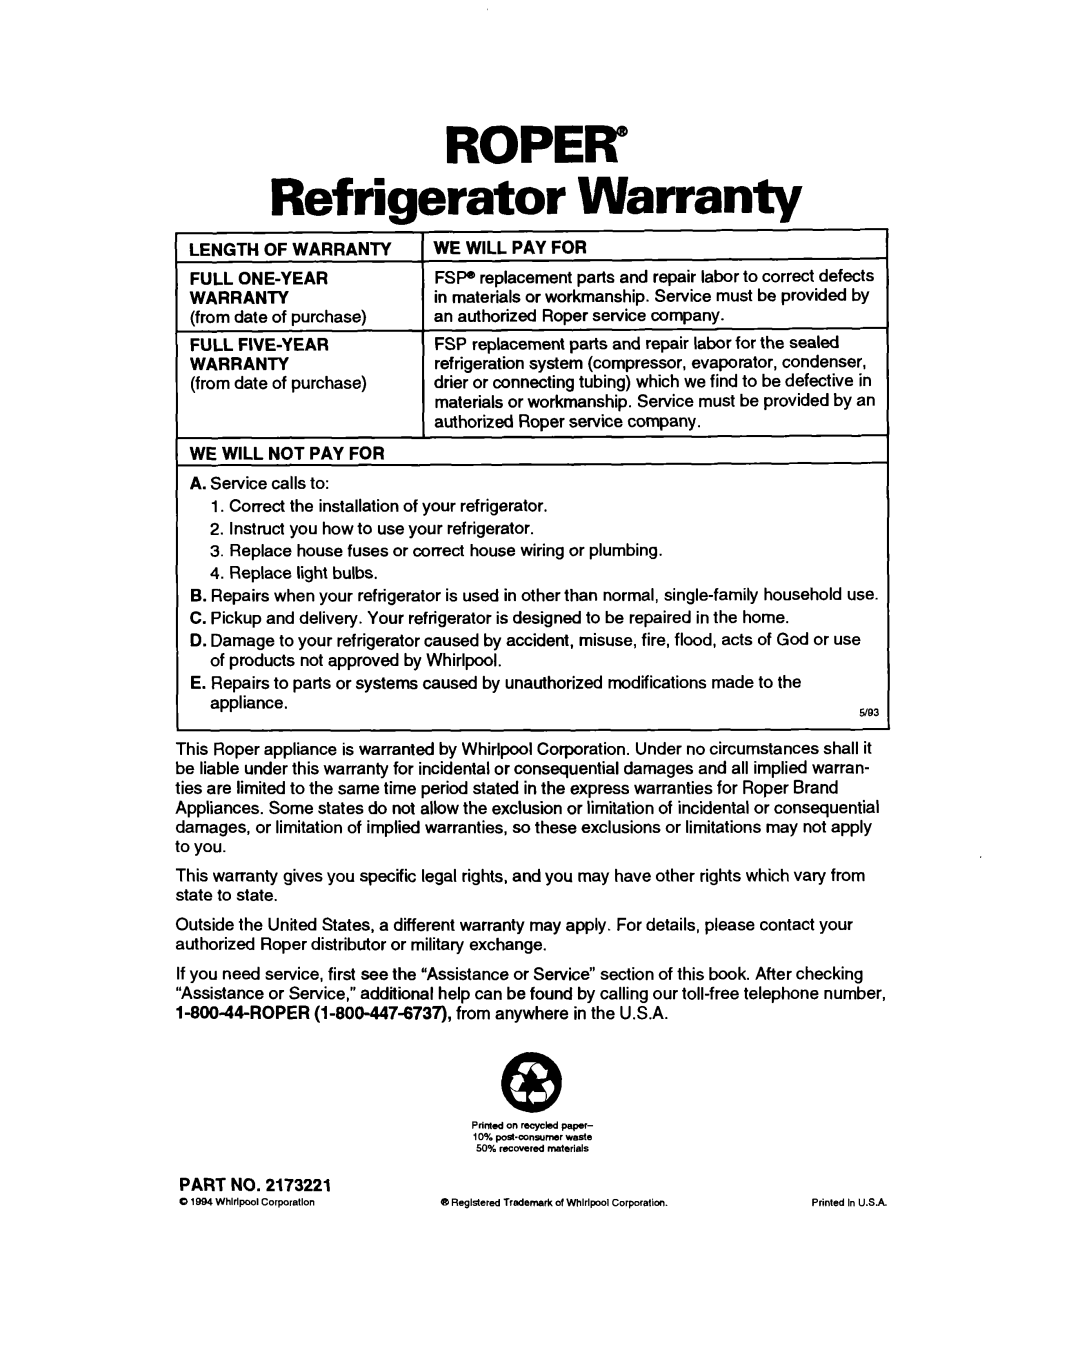 Whirlpool RTIGDK, RT16VK ROPER” Refrigerator Warranty, Length Of Warranty Full One-Year Warranty, Full Five-Year Warranty 